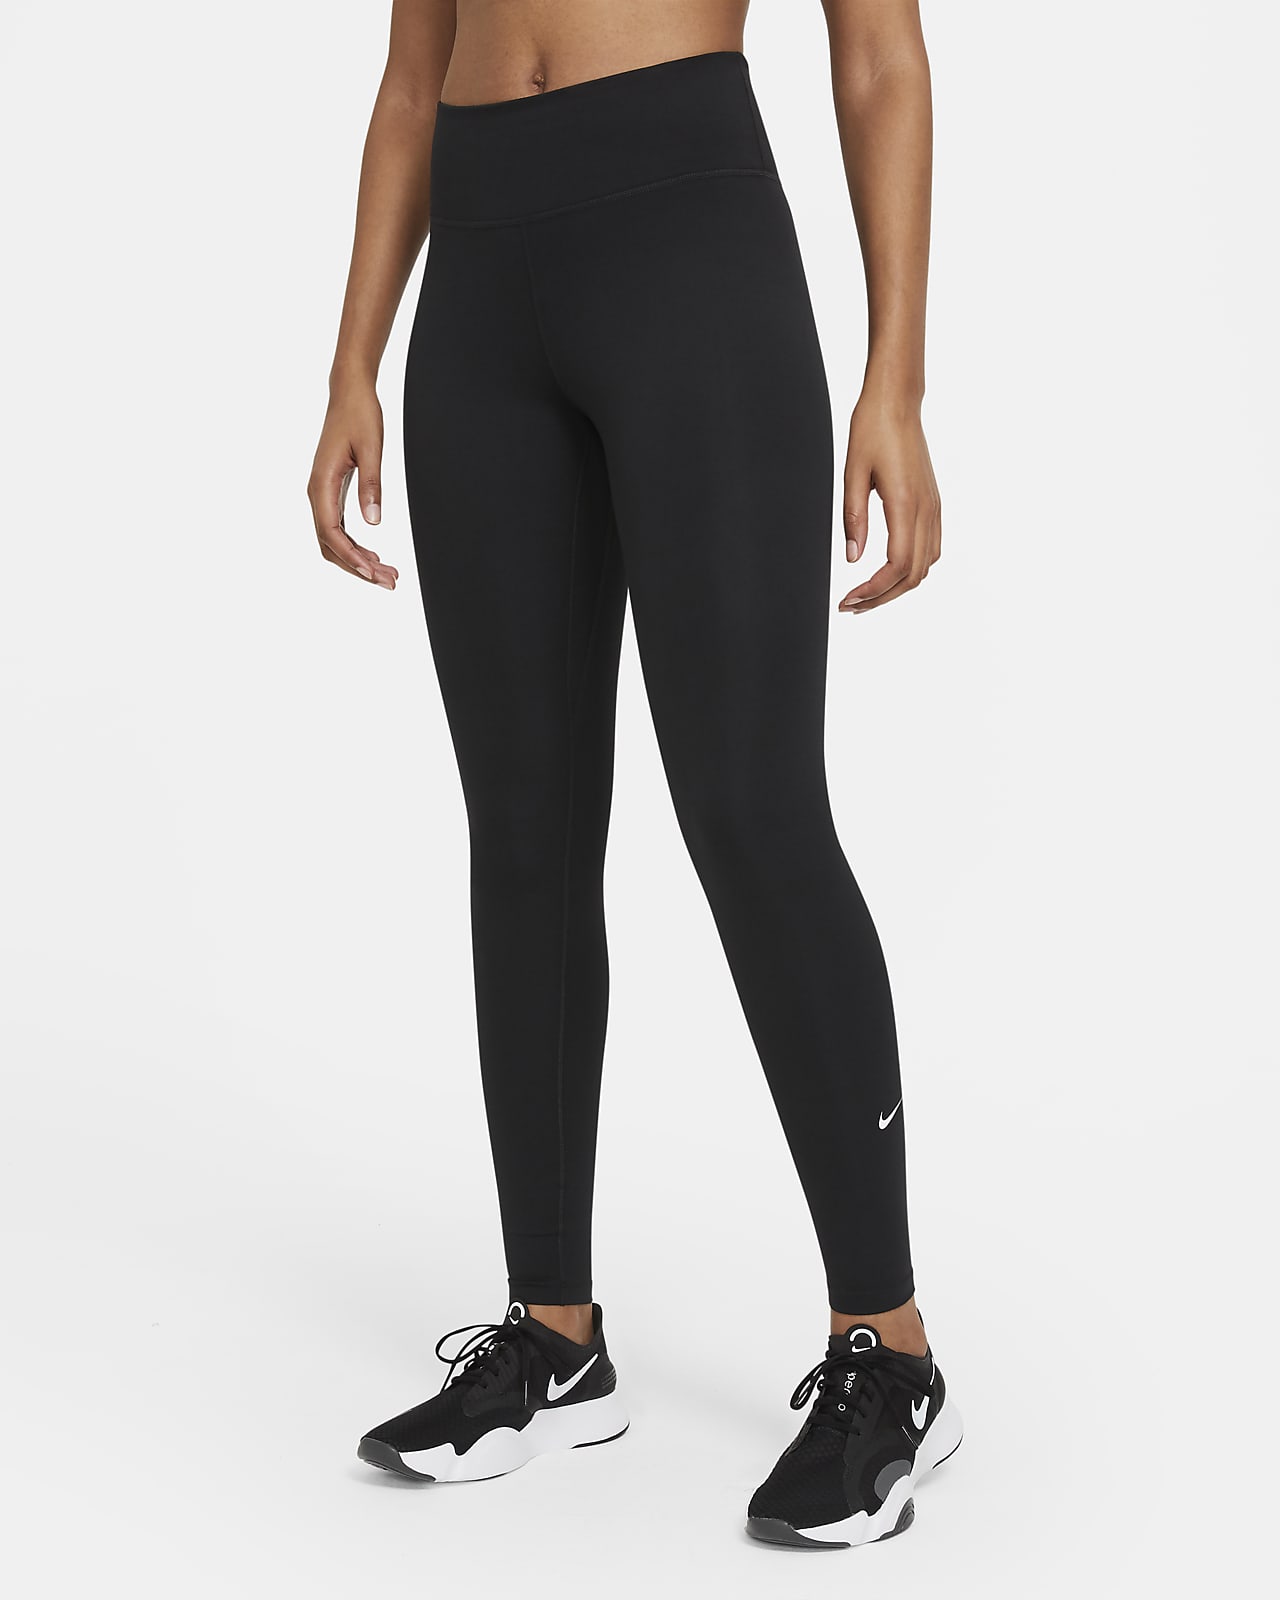 Nike Dri-FIT One Leggings mit mittelhohem Bund für Damen